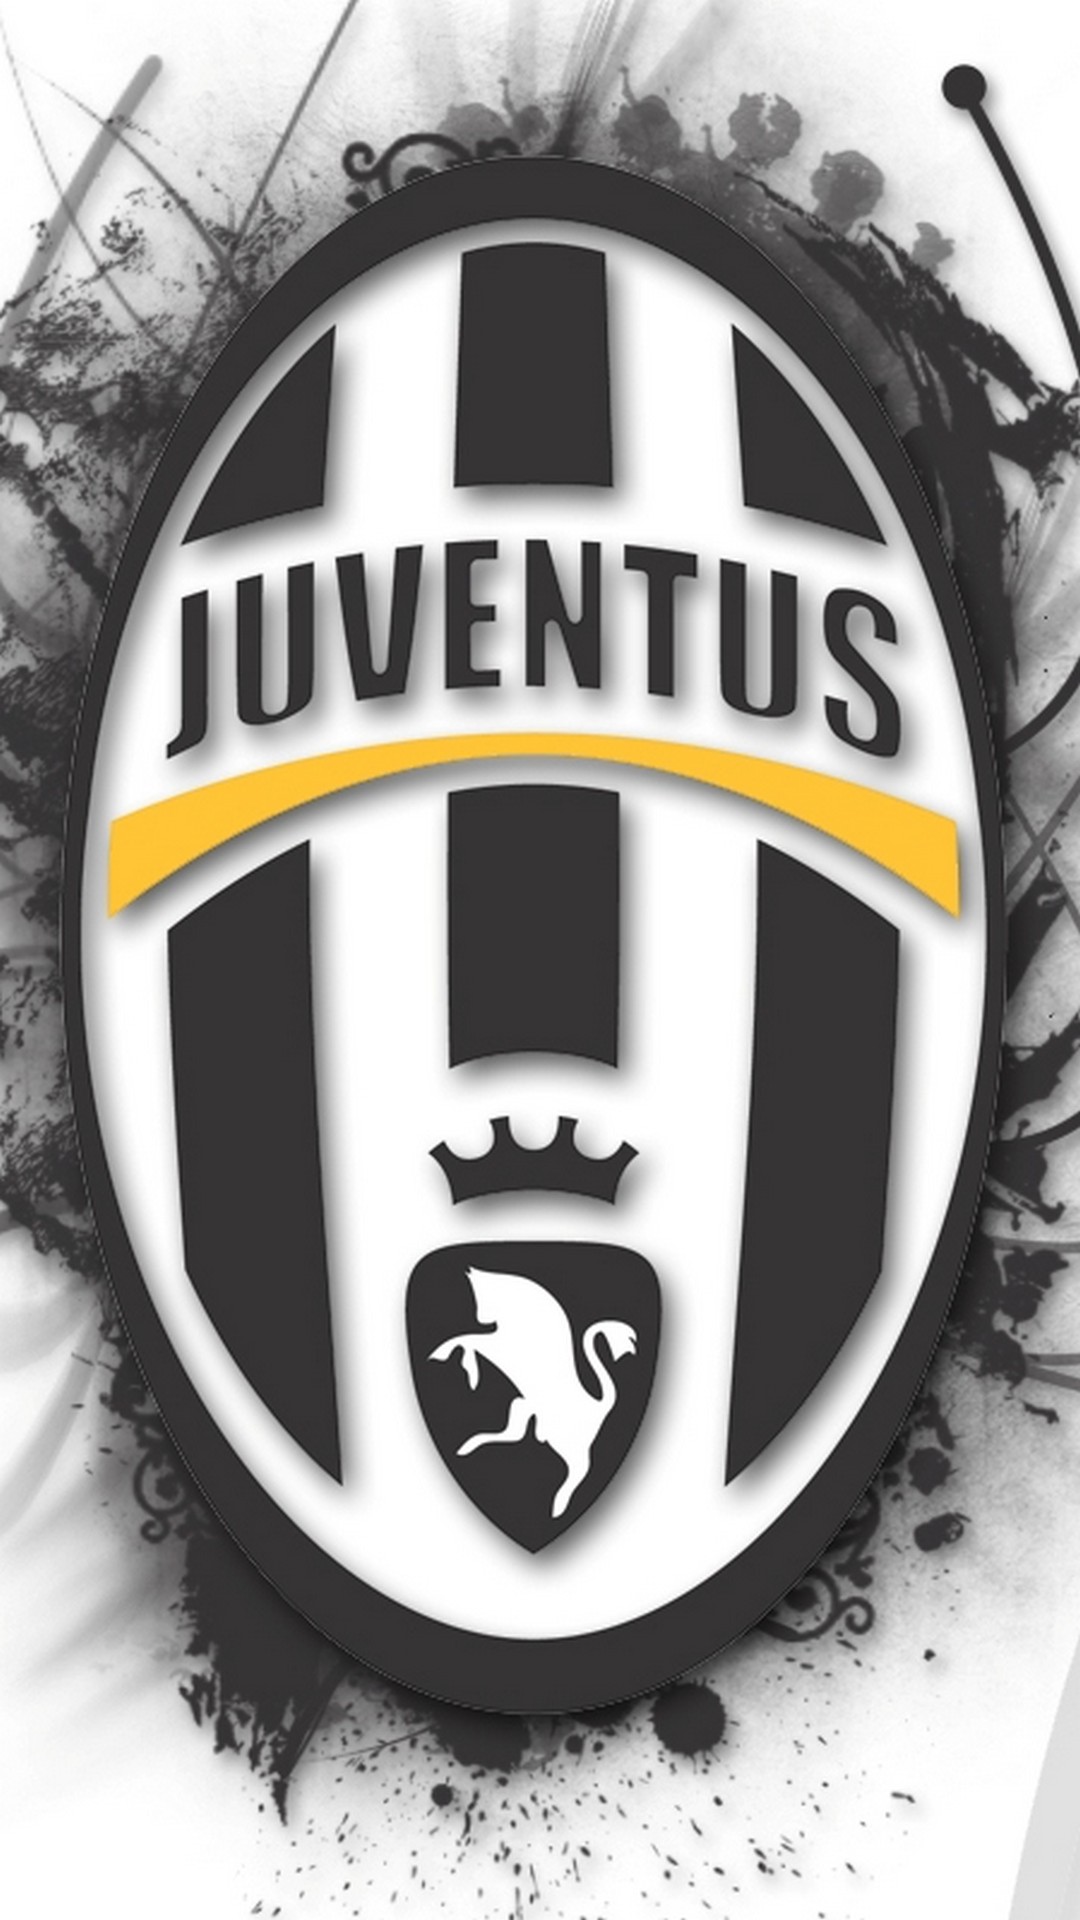 Juventus Wallpaper Iphone 7 resolution 1080x1920